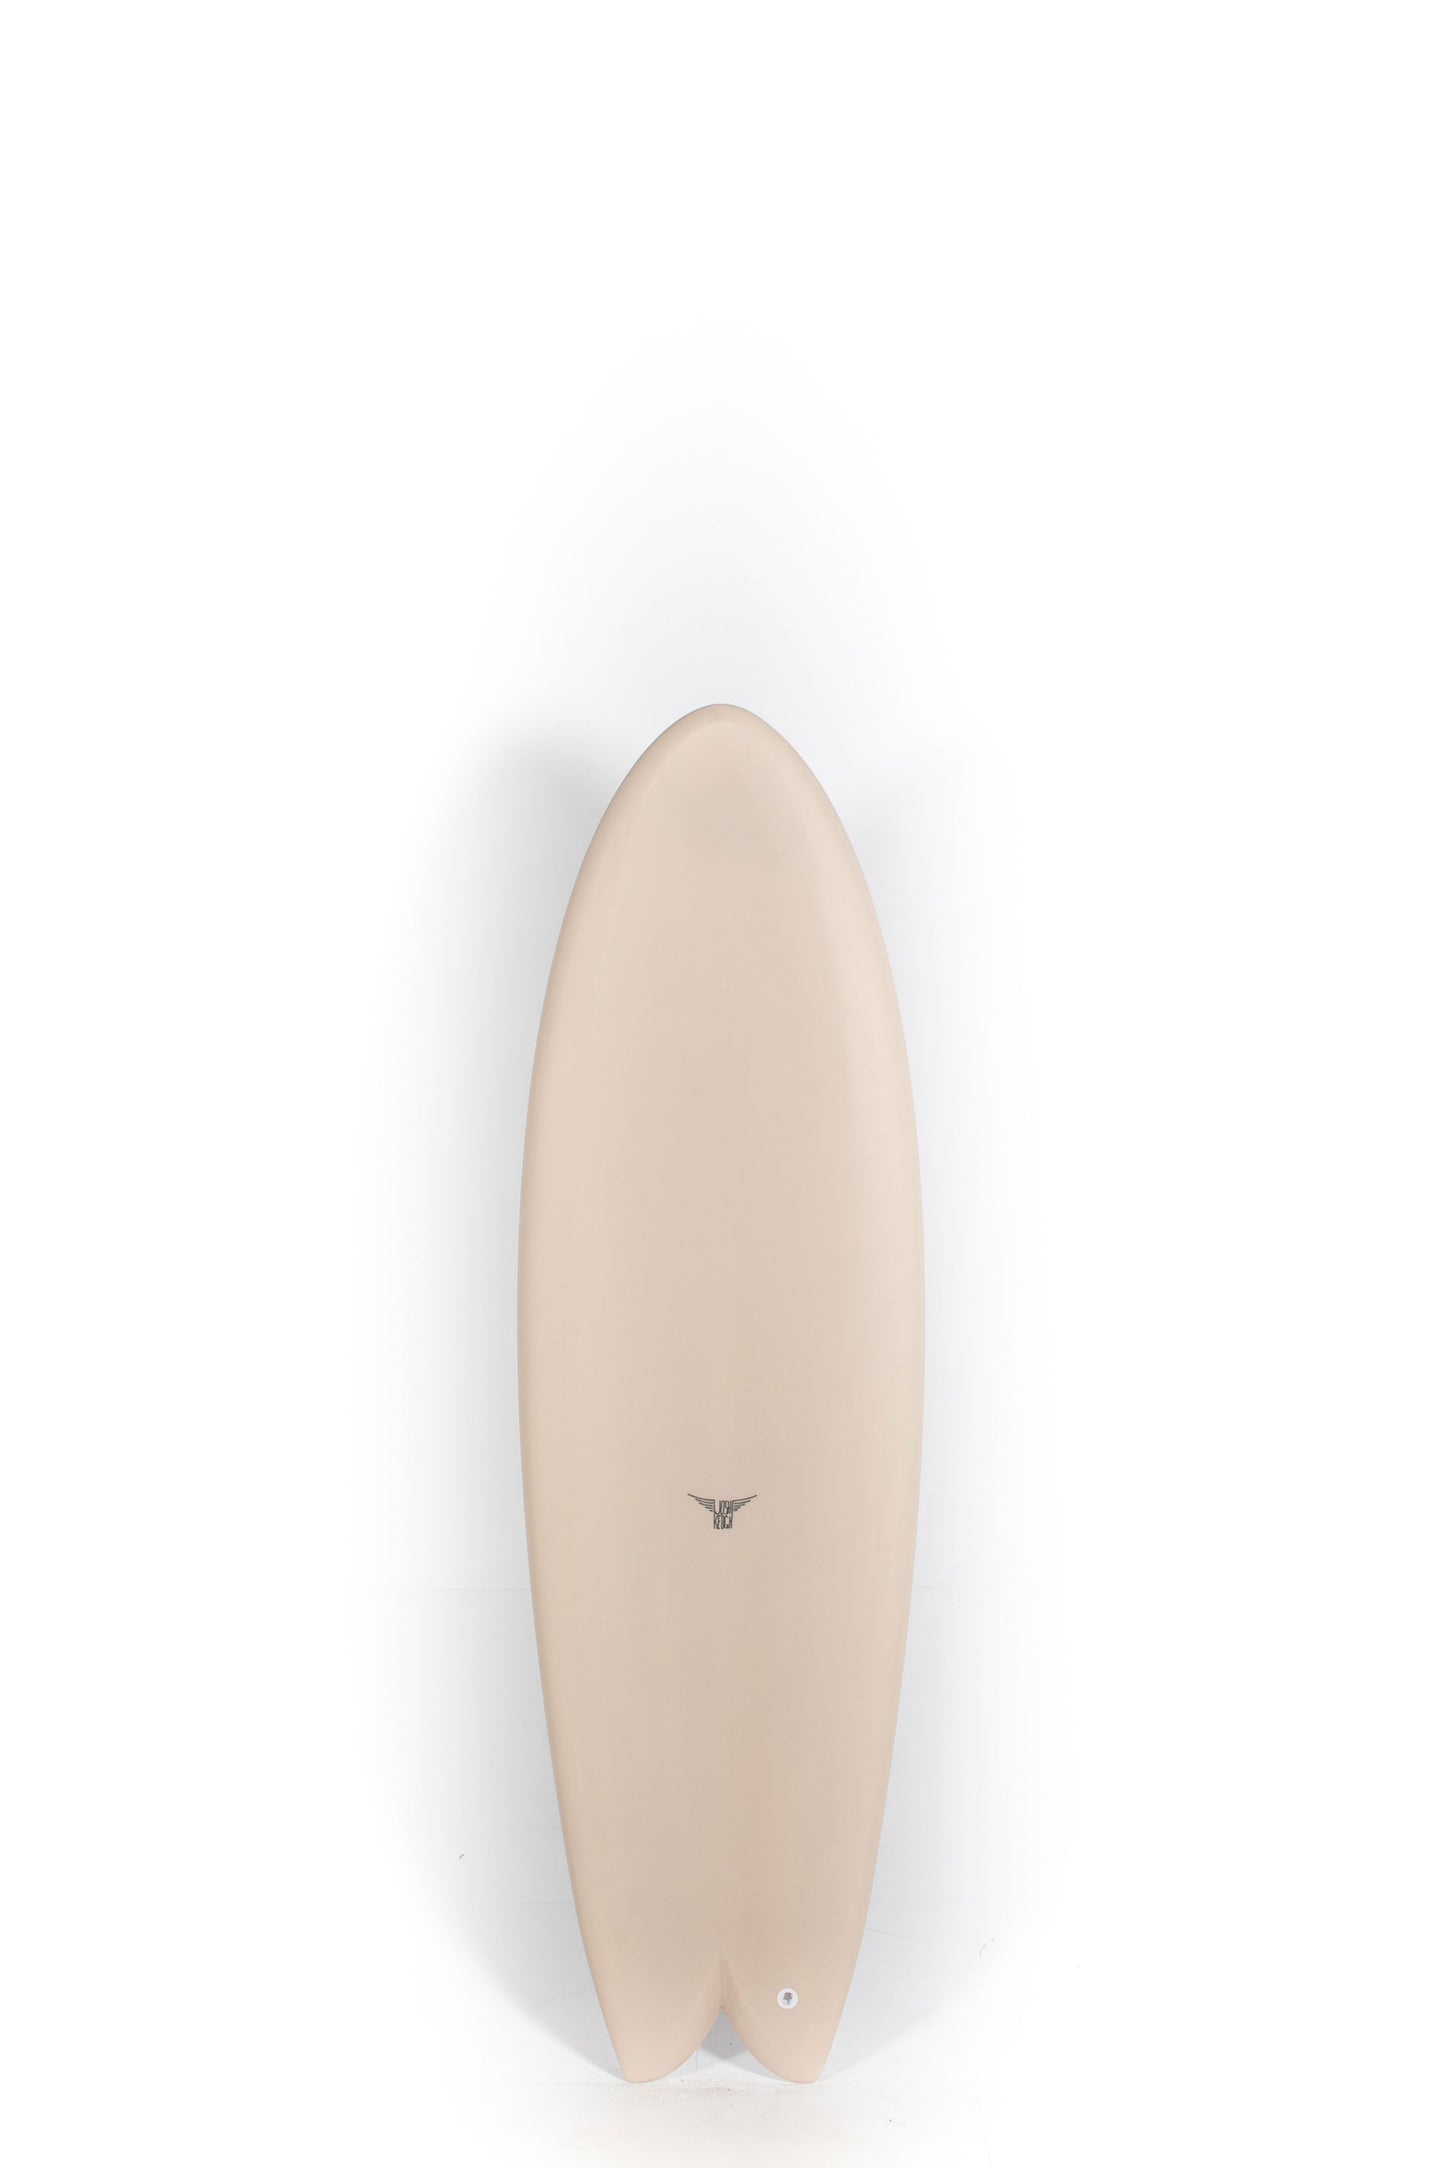 Pukas Surf Shop - Joshua Keogh Surfboard - MONAD by Joshua Keogh - 5'11" x 21 x 2 5/8 - MONADTWIN511